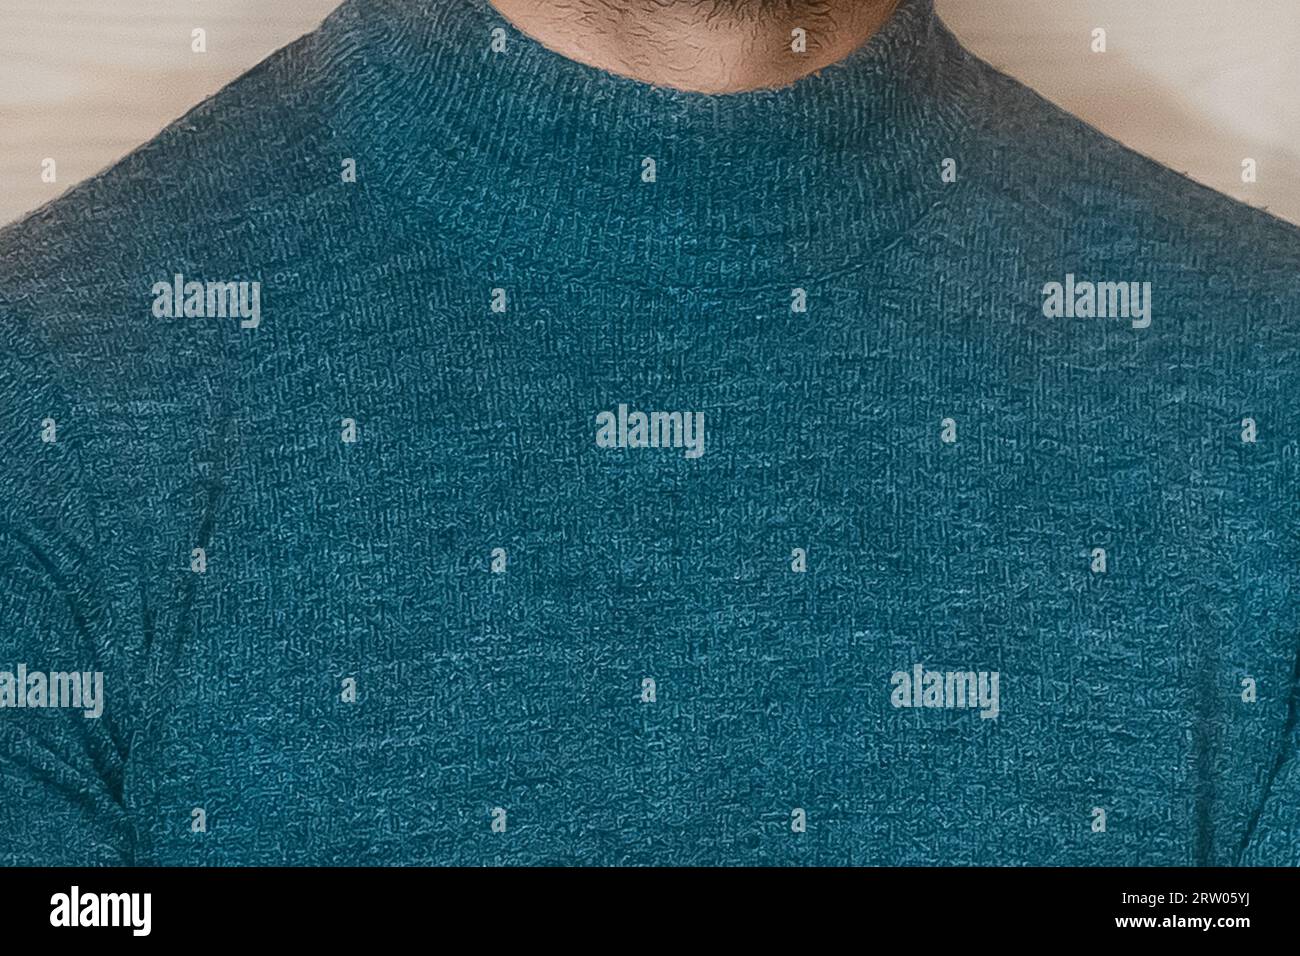 Close-up blue turtleneck men's style clothing fashion. Stock Photo